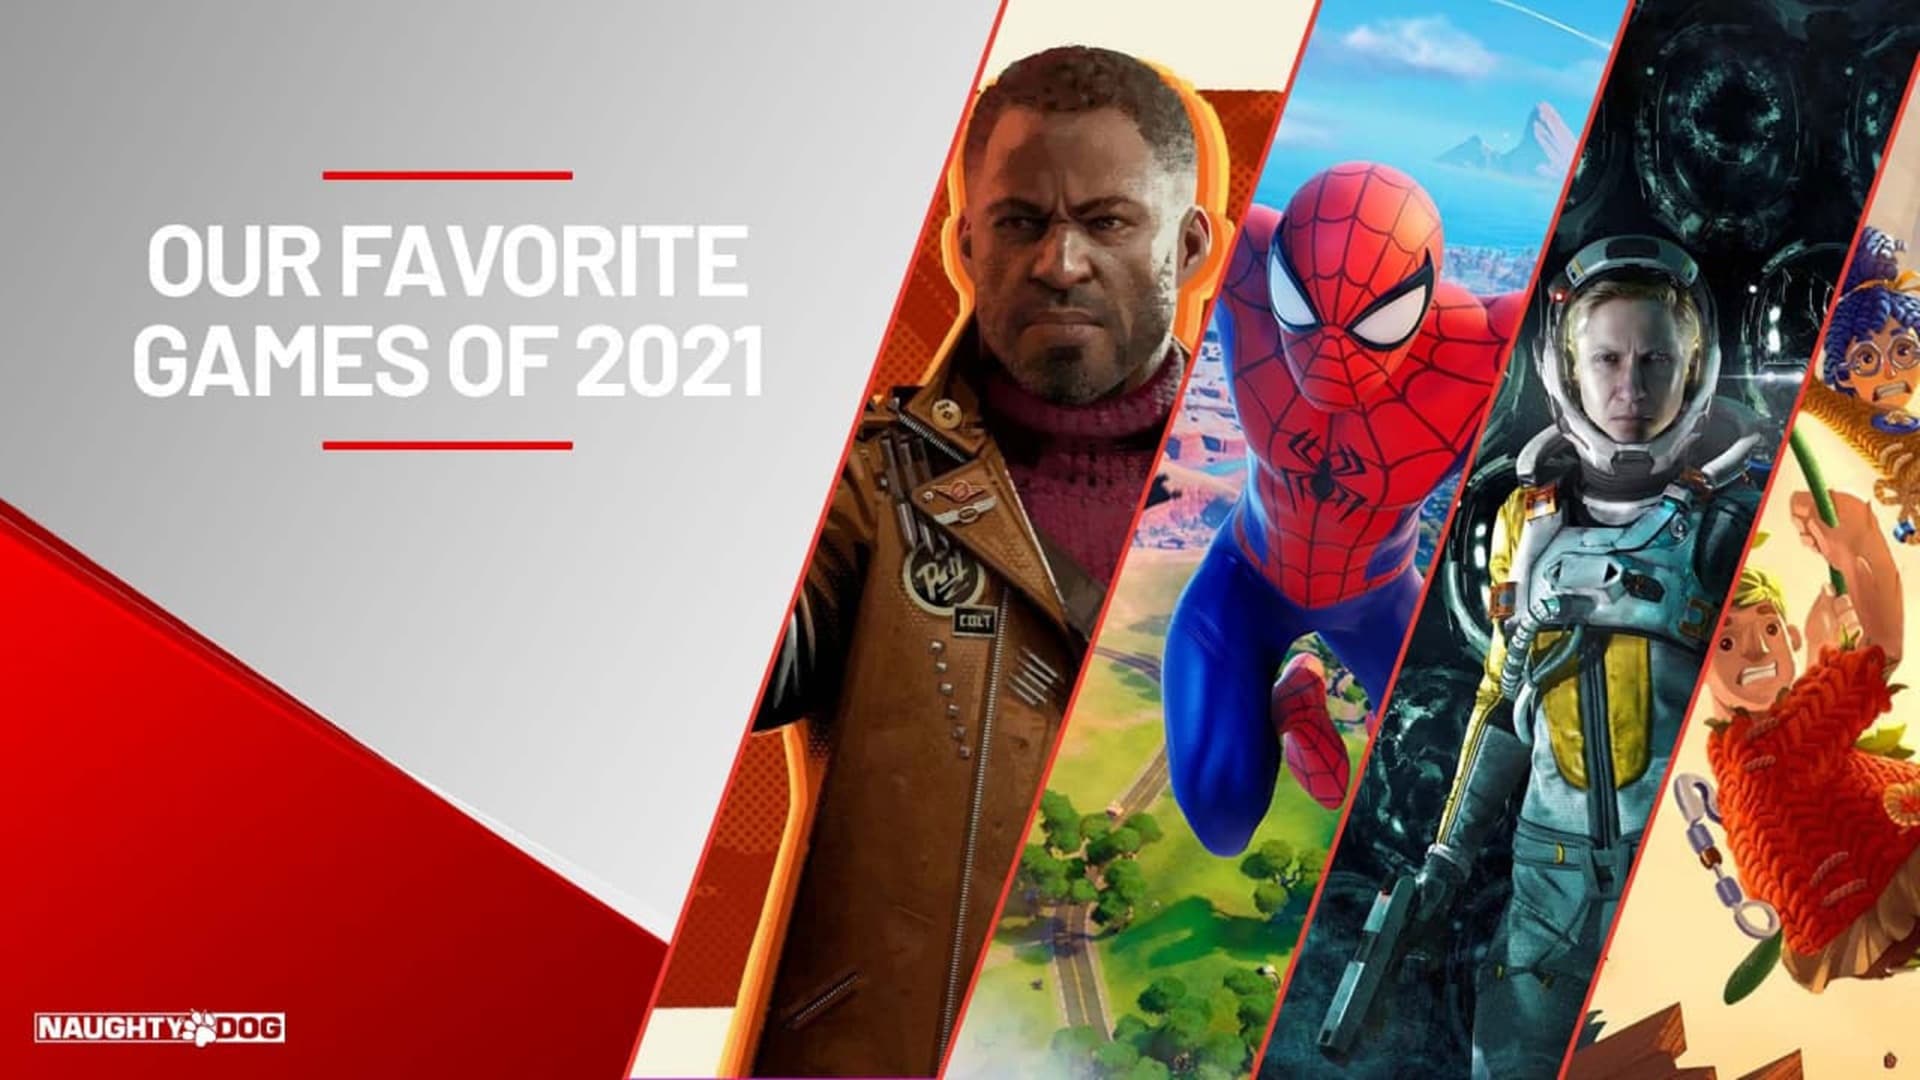 Los desarrolladores de Naughty Dog revelan sus juegos favoritos de 2021, GamersRD